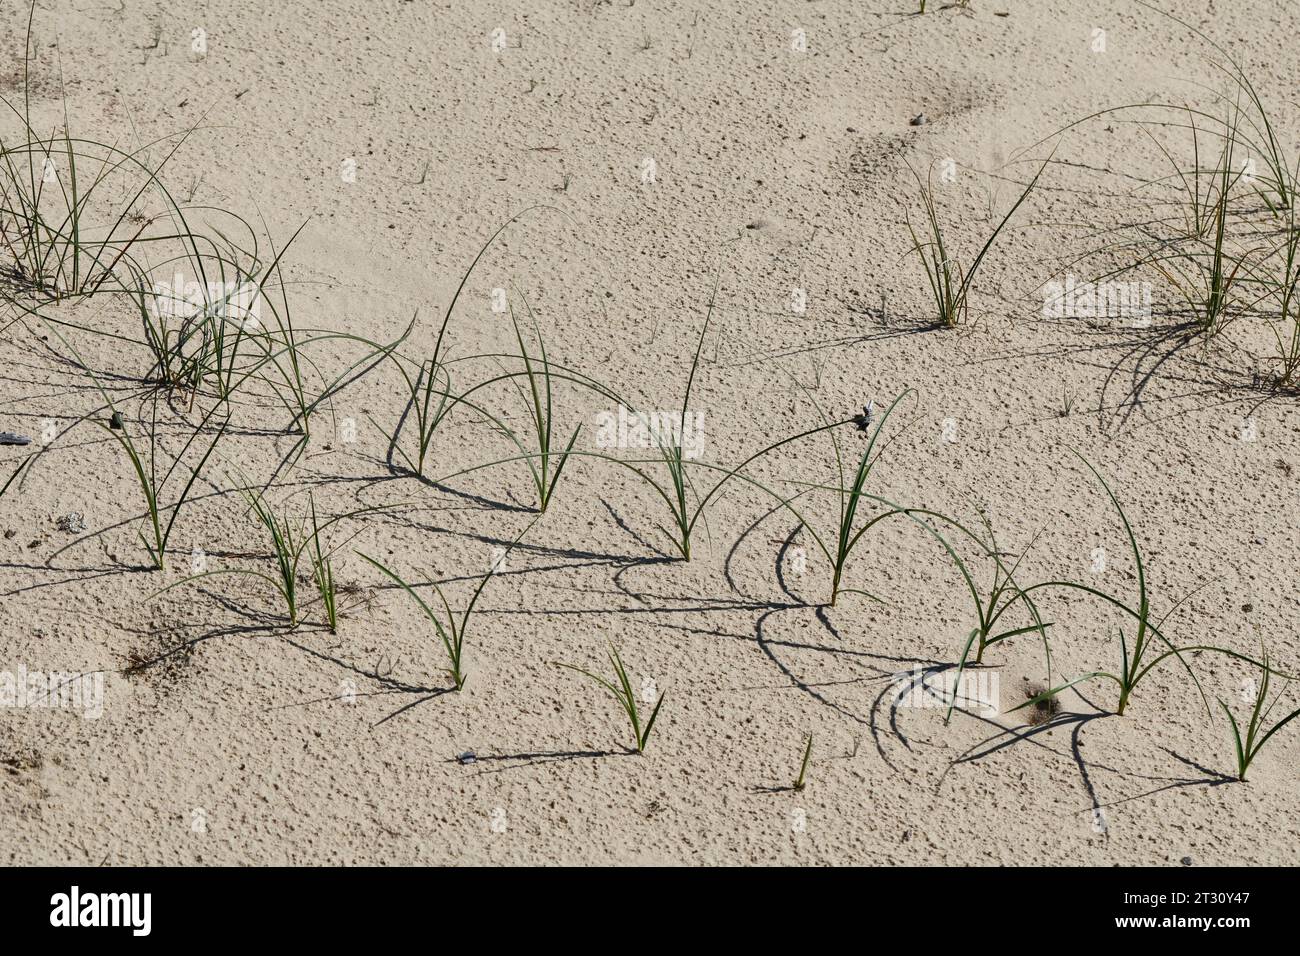 Sand-Segge, Sandsegge, Segge, Carex arenaria, Sand Sedge, la laîche des sables Foto Stock